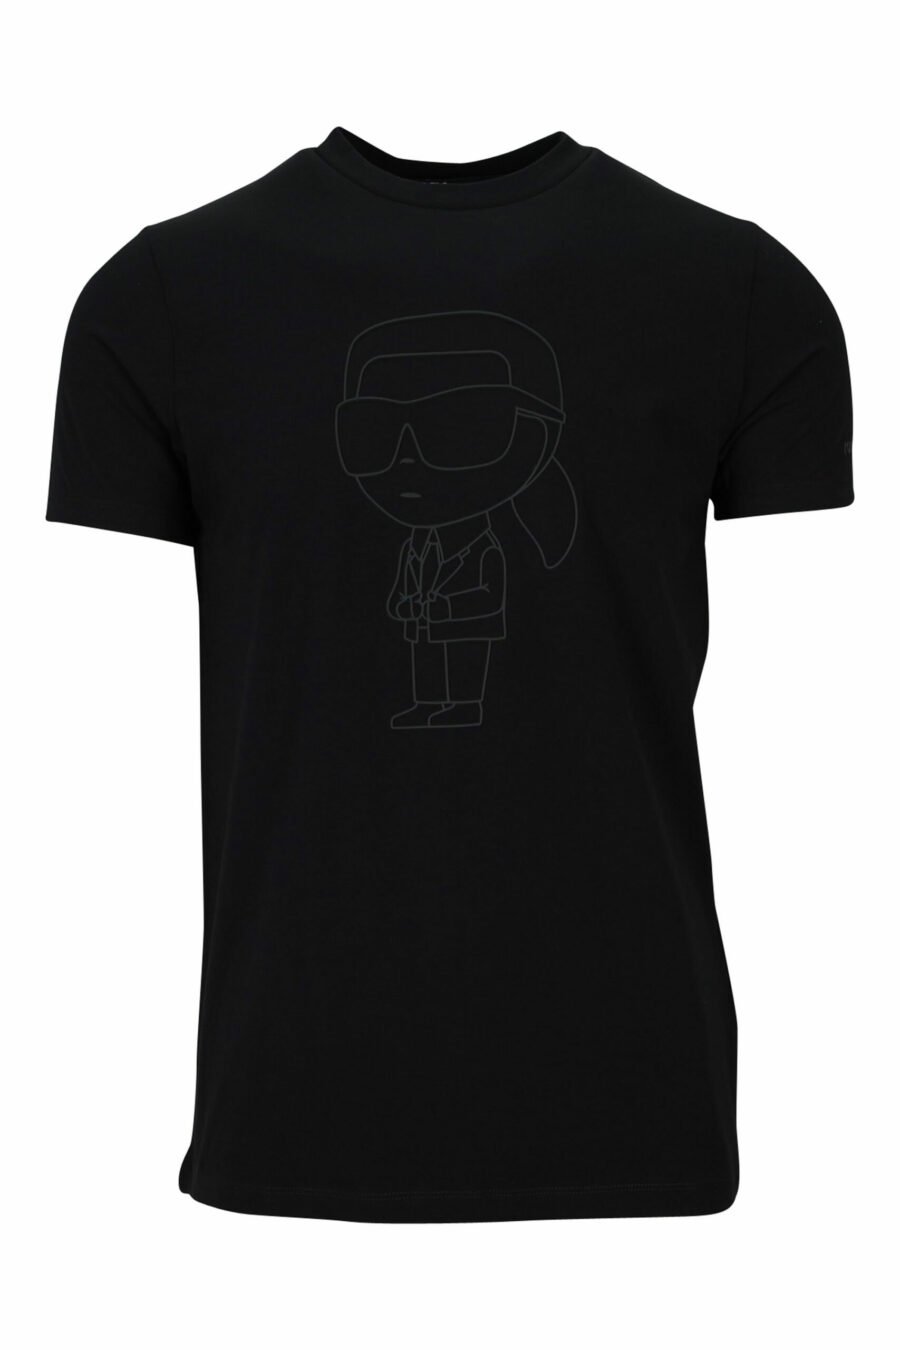 T-shirt noir avec logo monochrome caoutchouté - 4062226401425